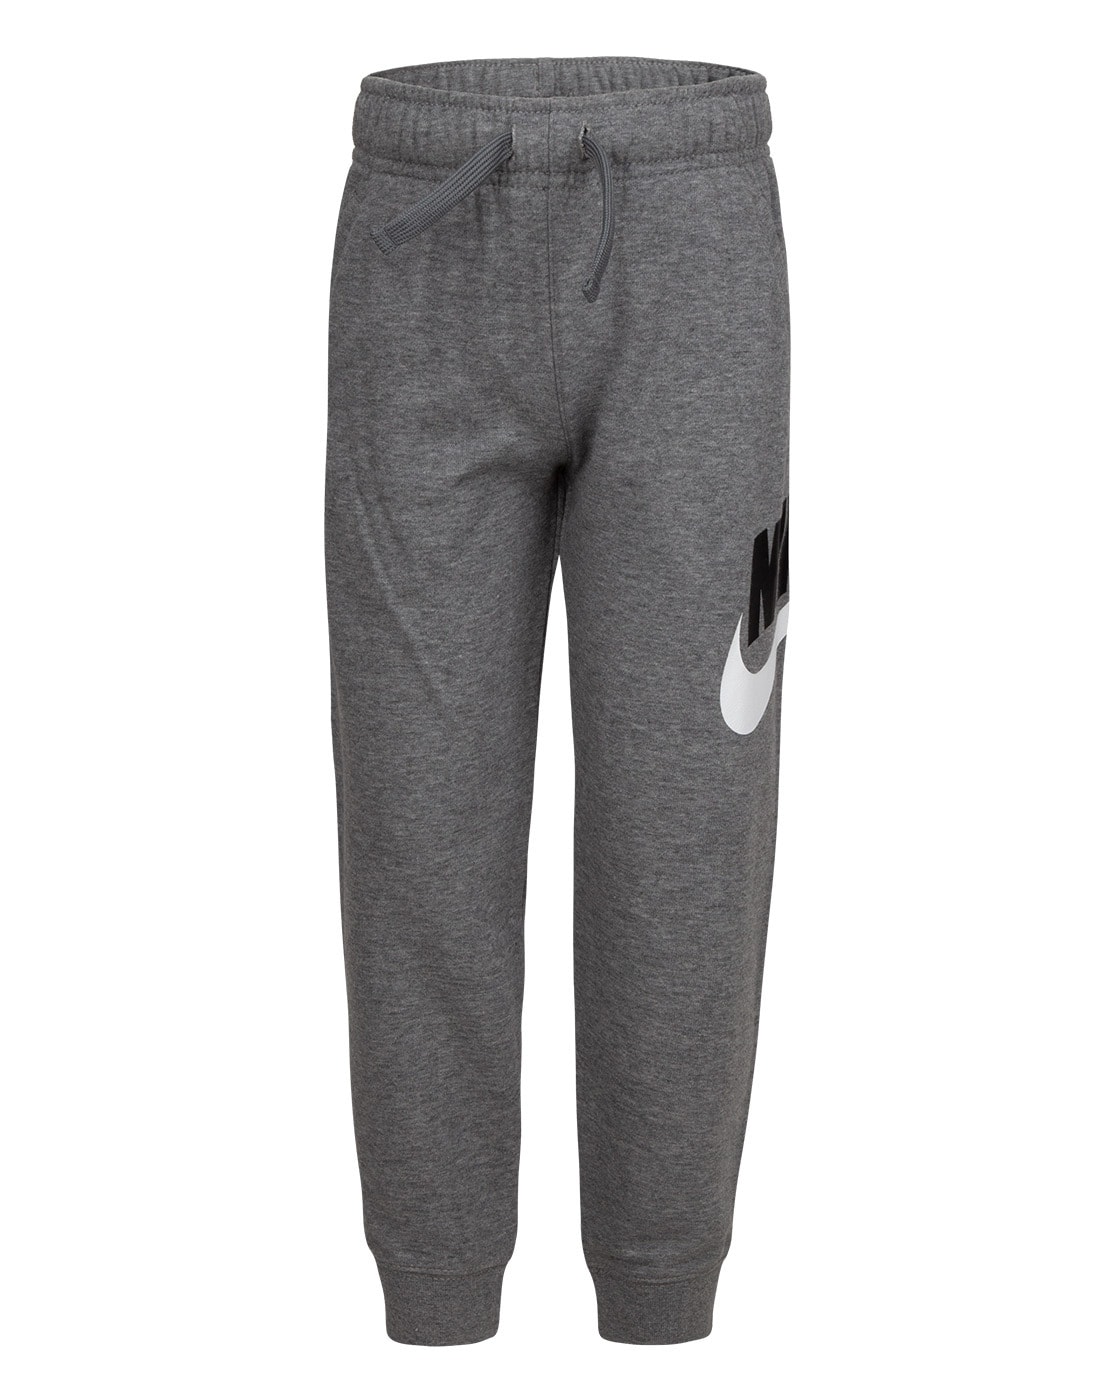 Boys' Nike Pants | Nordstrom Rack